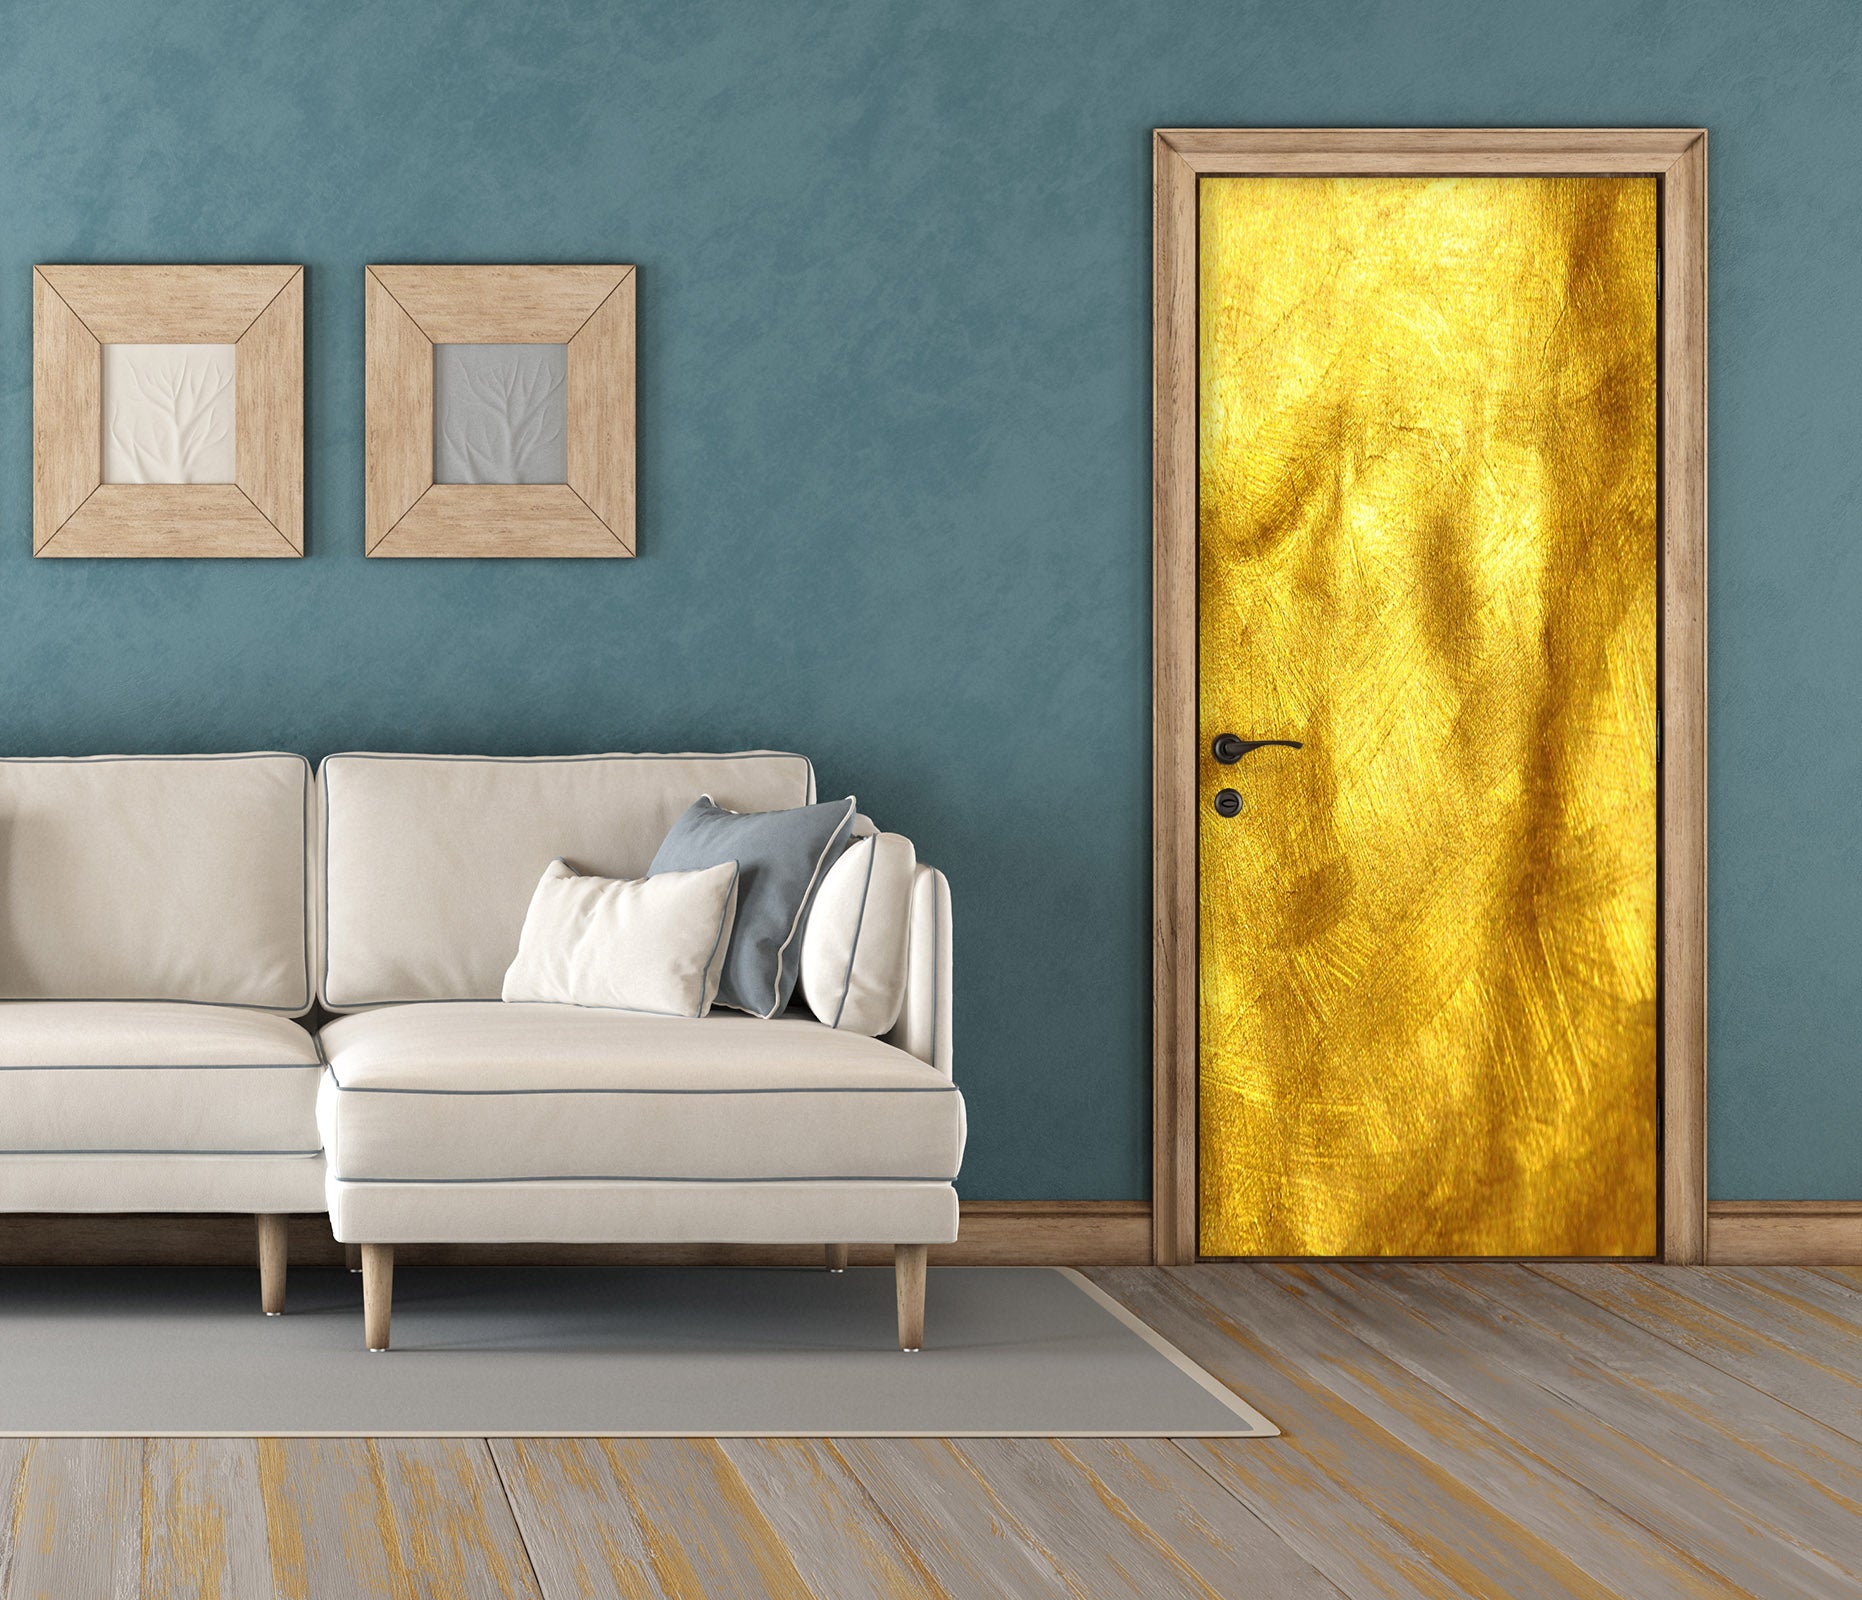 3D Golden Pattern 25068 Door Mural